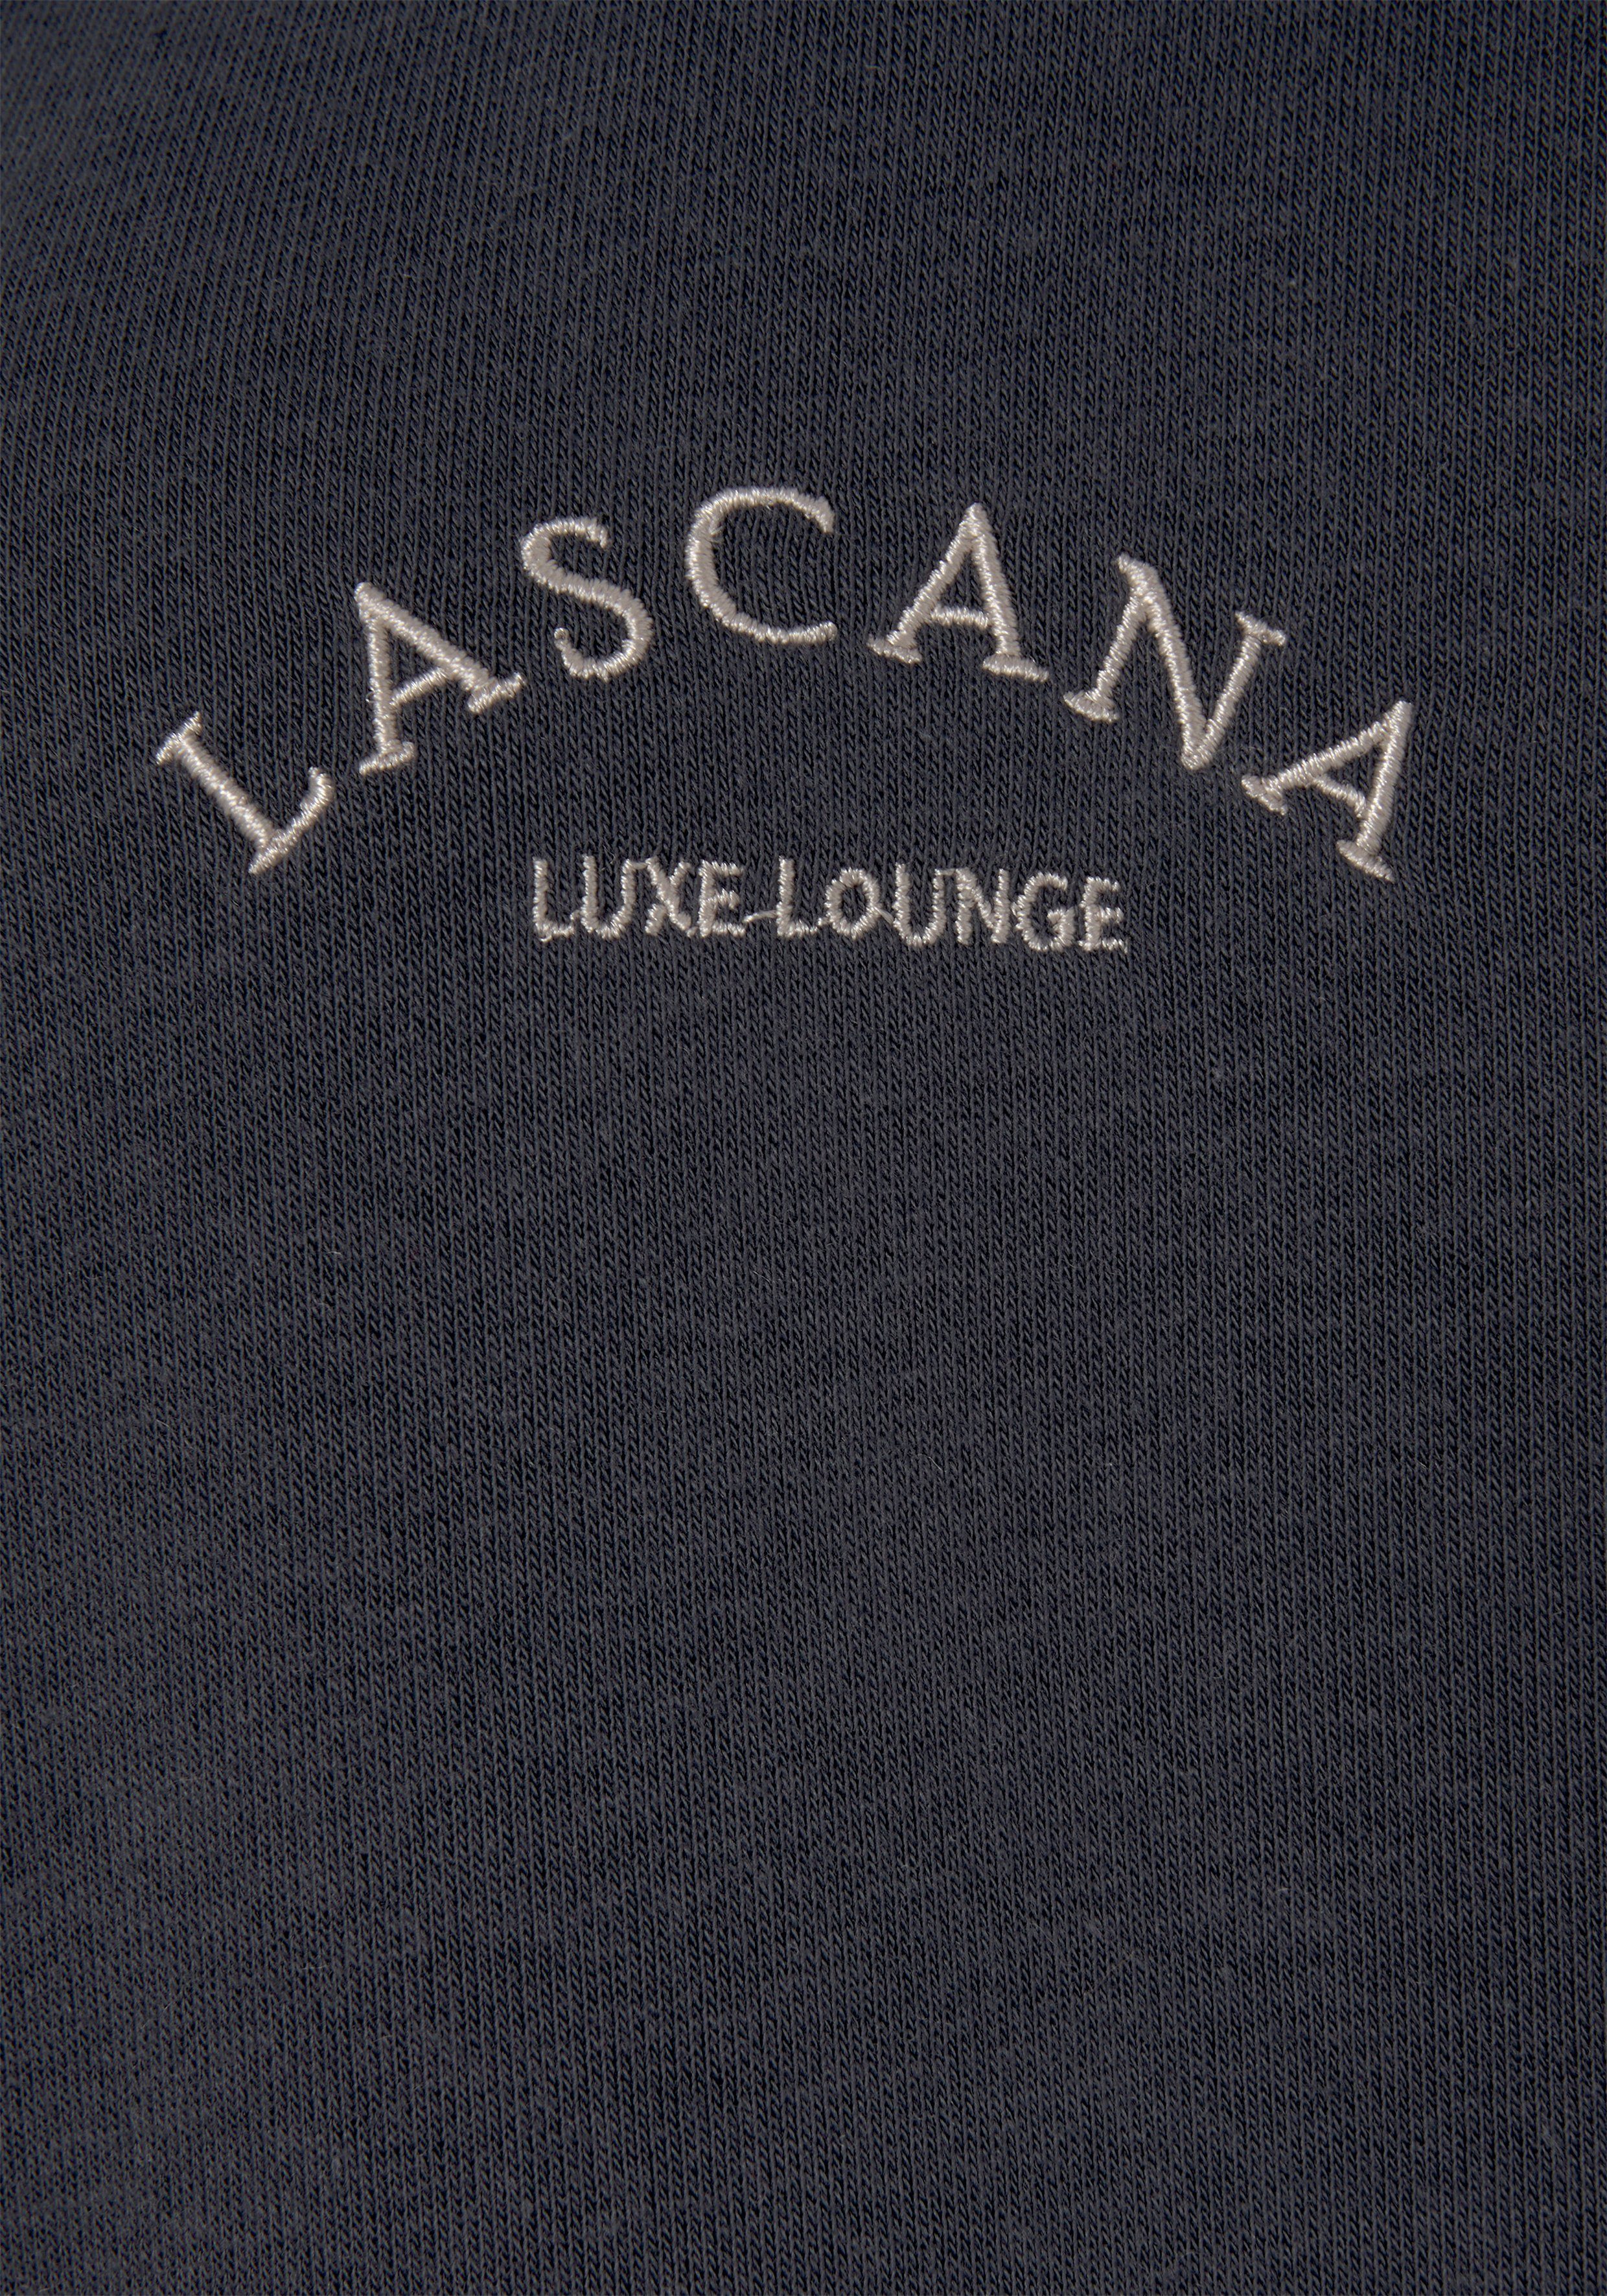 Kapuze und angeraut, mit anthrazit -Sweatjacke LASCANA Loungewear, Kapuzensweatjacke Taschen seitlichen mit Innen Loungeanzug